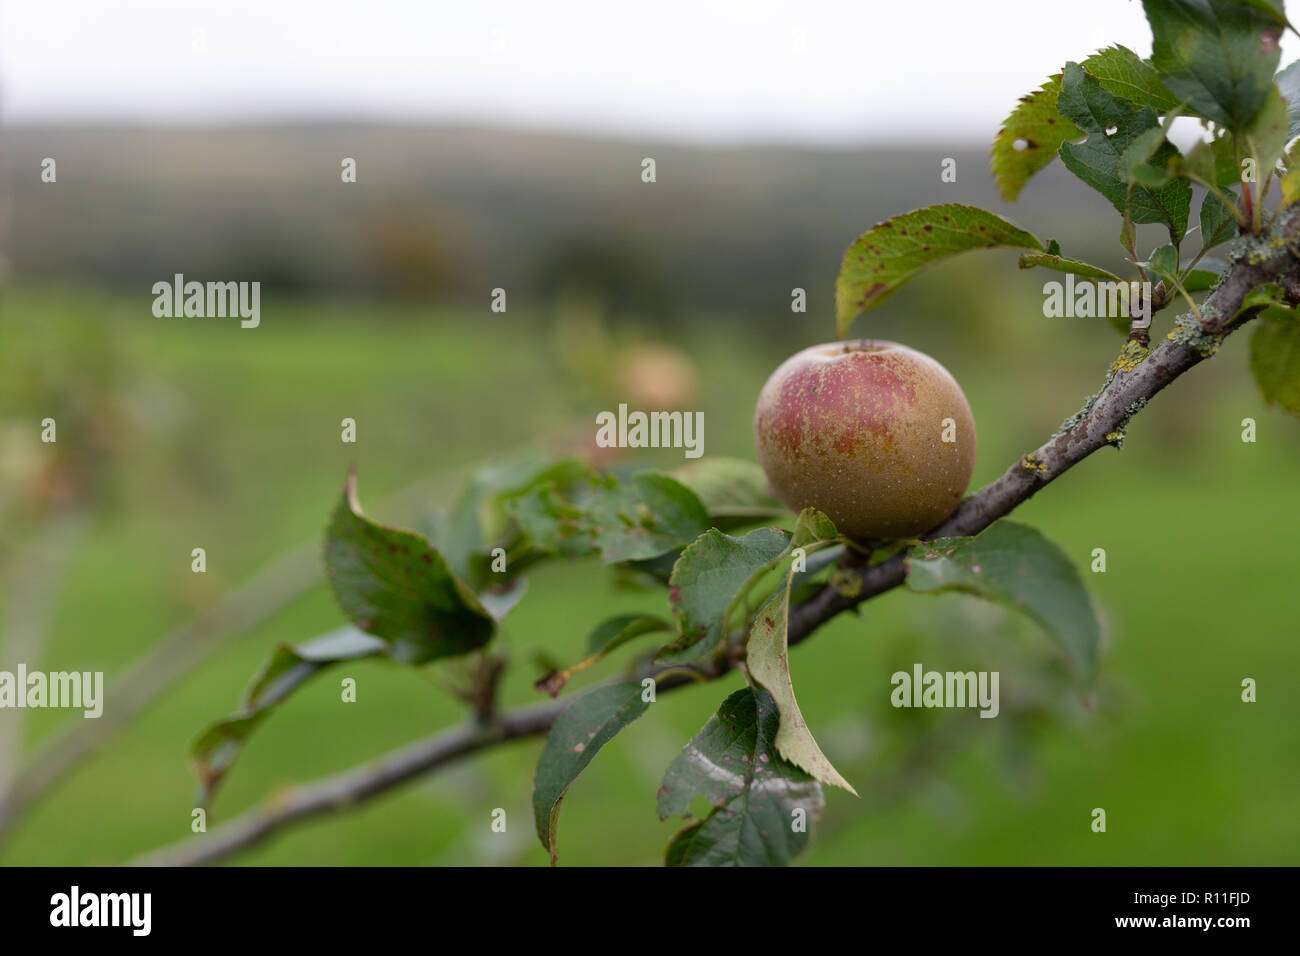 An apple on an apple tree Stock Photo